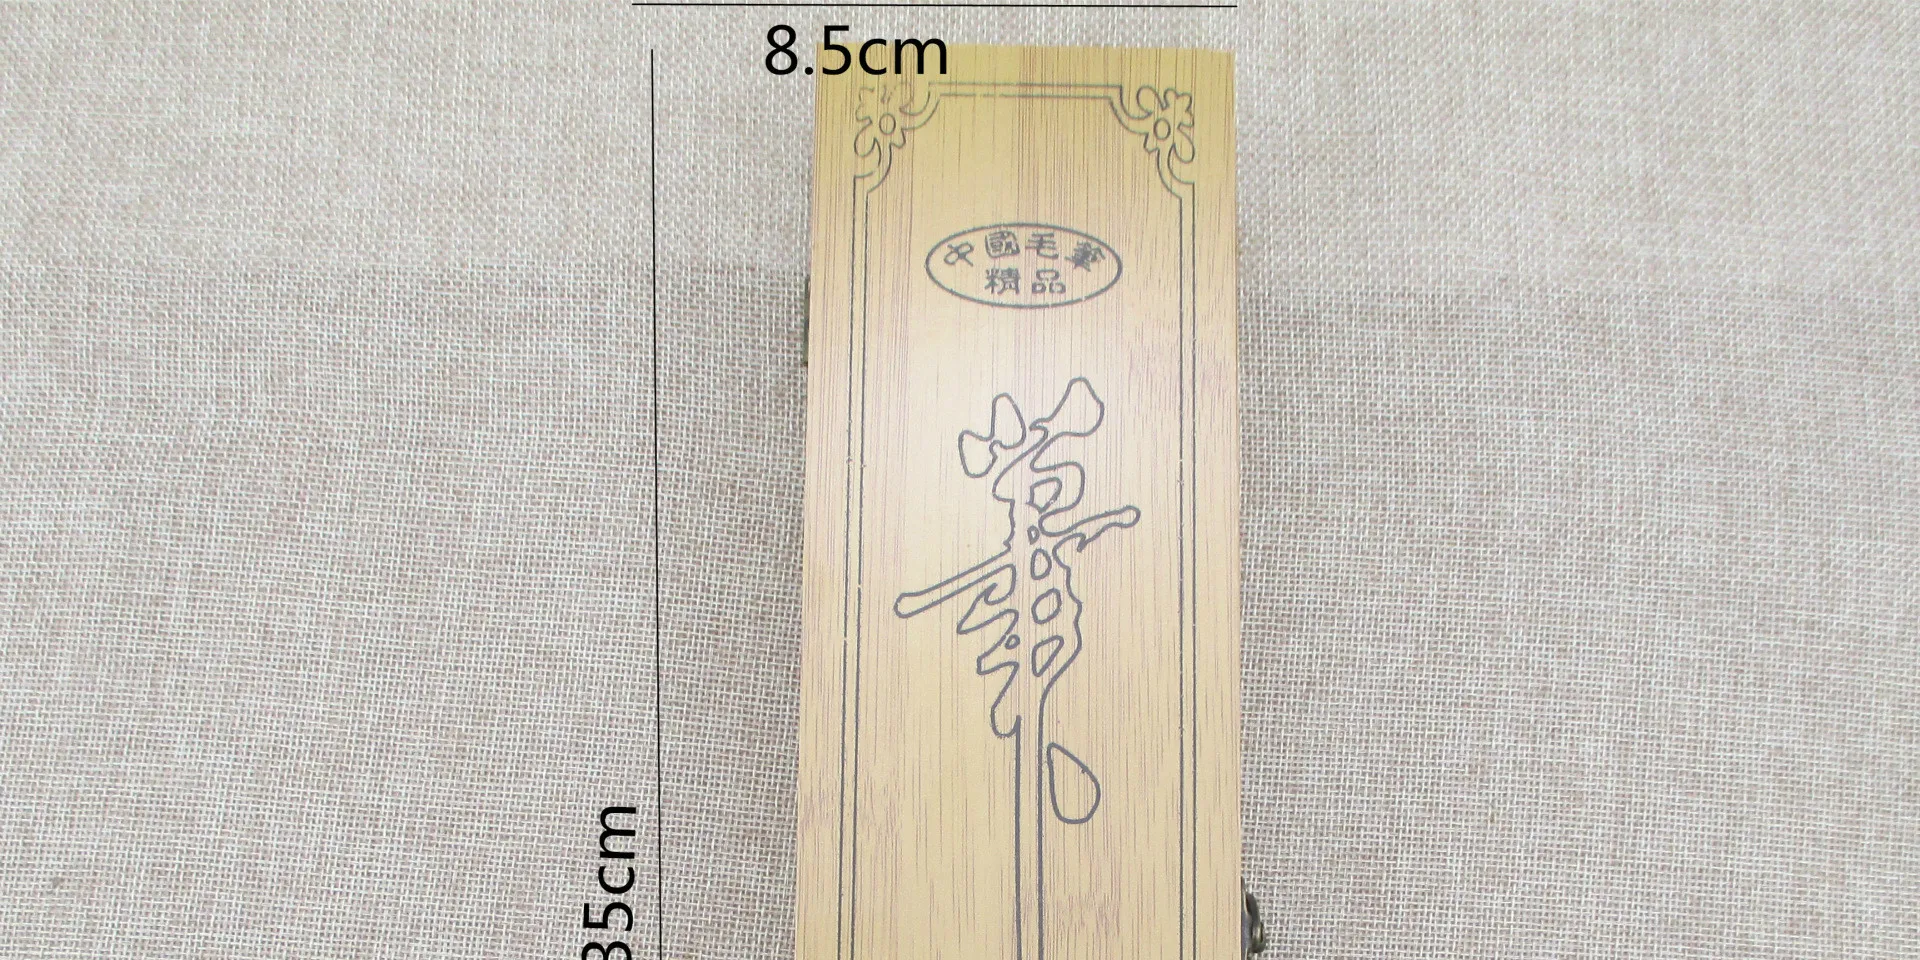 Горячие традиционной китайской каллиграфии ручка Кисточки подарочный набор ласка шерстяные несколько волосков Малый сценариев перо